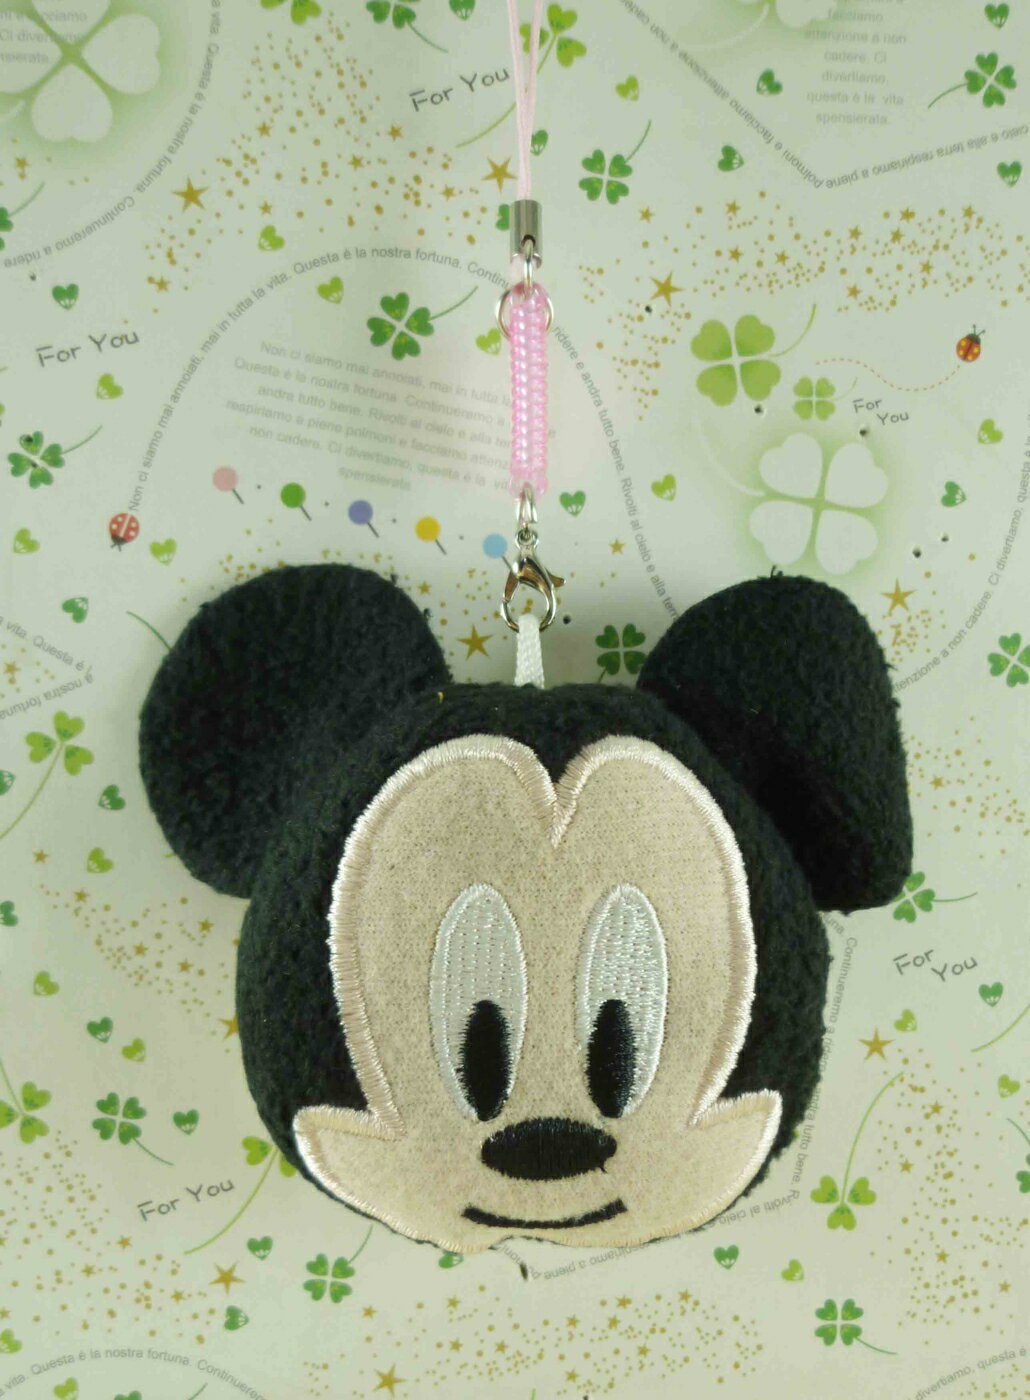 【震撼精品百貨】Micky Mouse 米奇/米妮 擦拭吊飾-米奇 震撼日式精品百貨